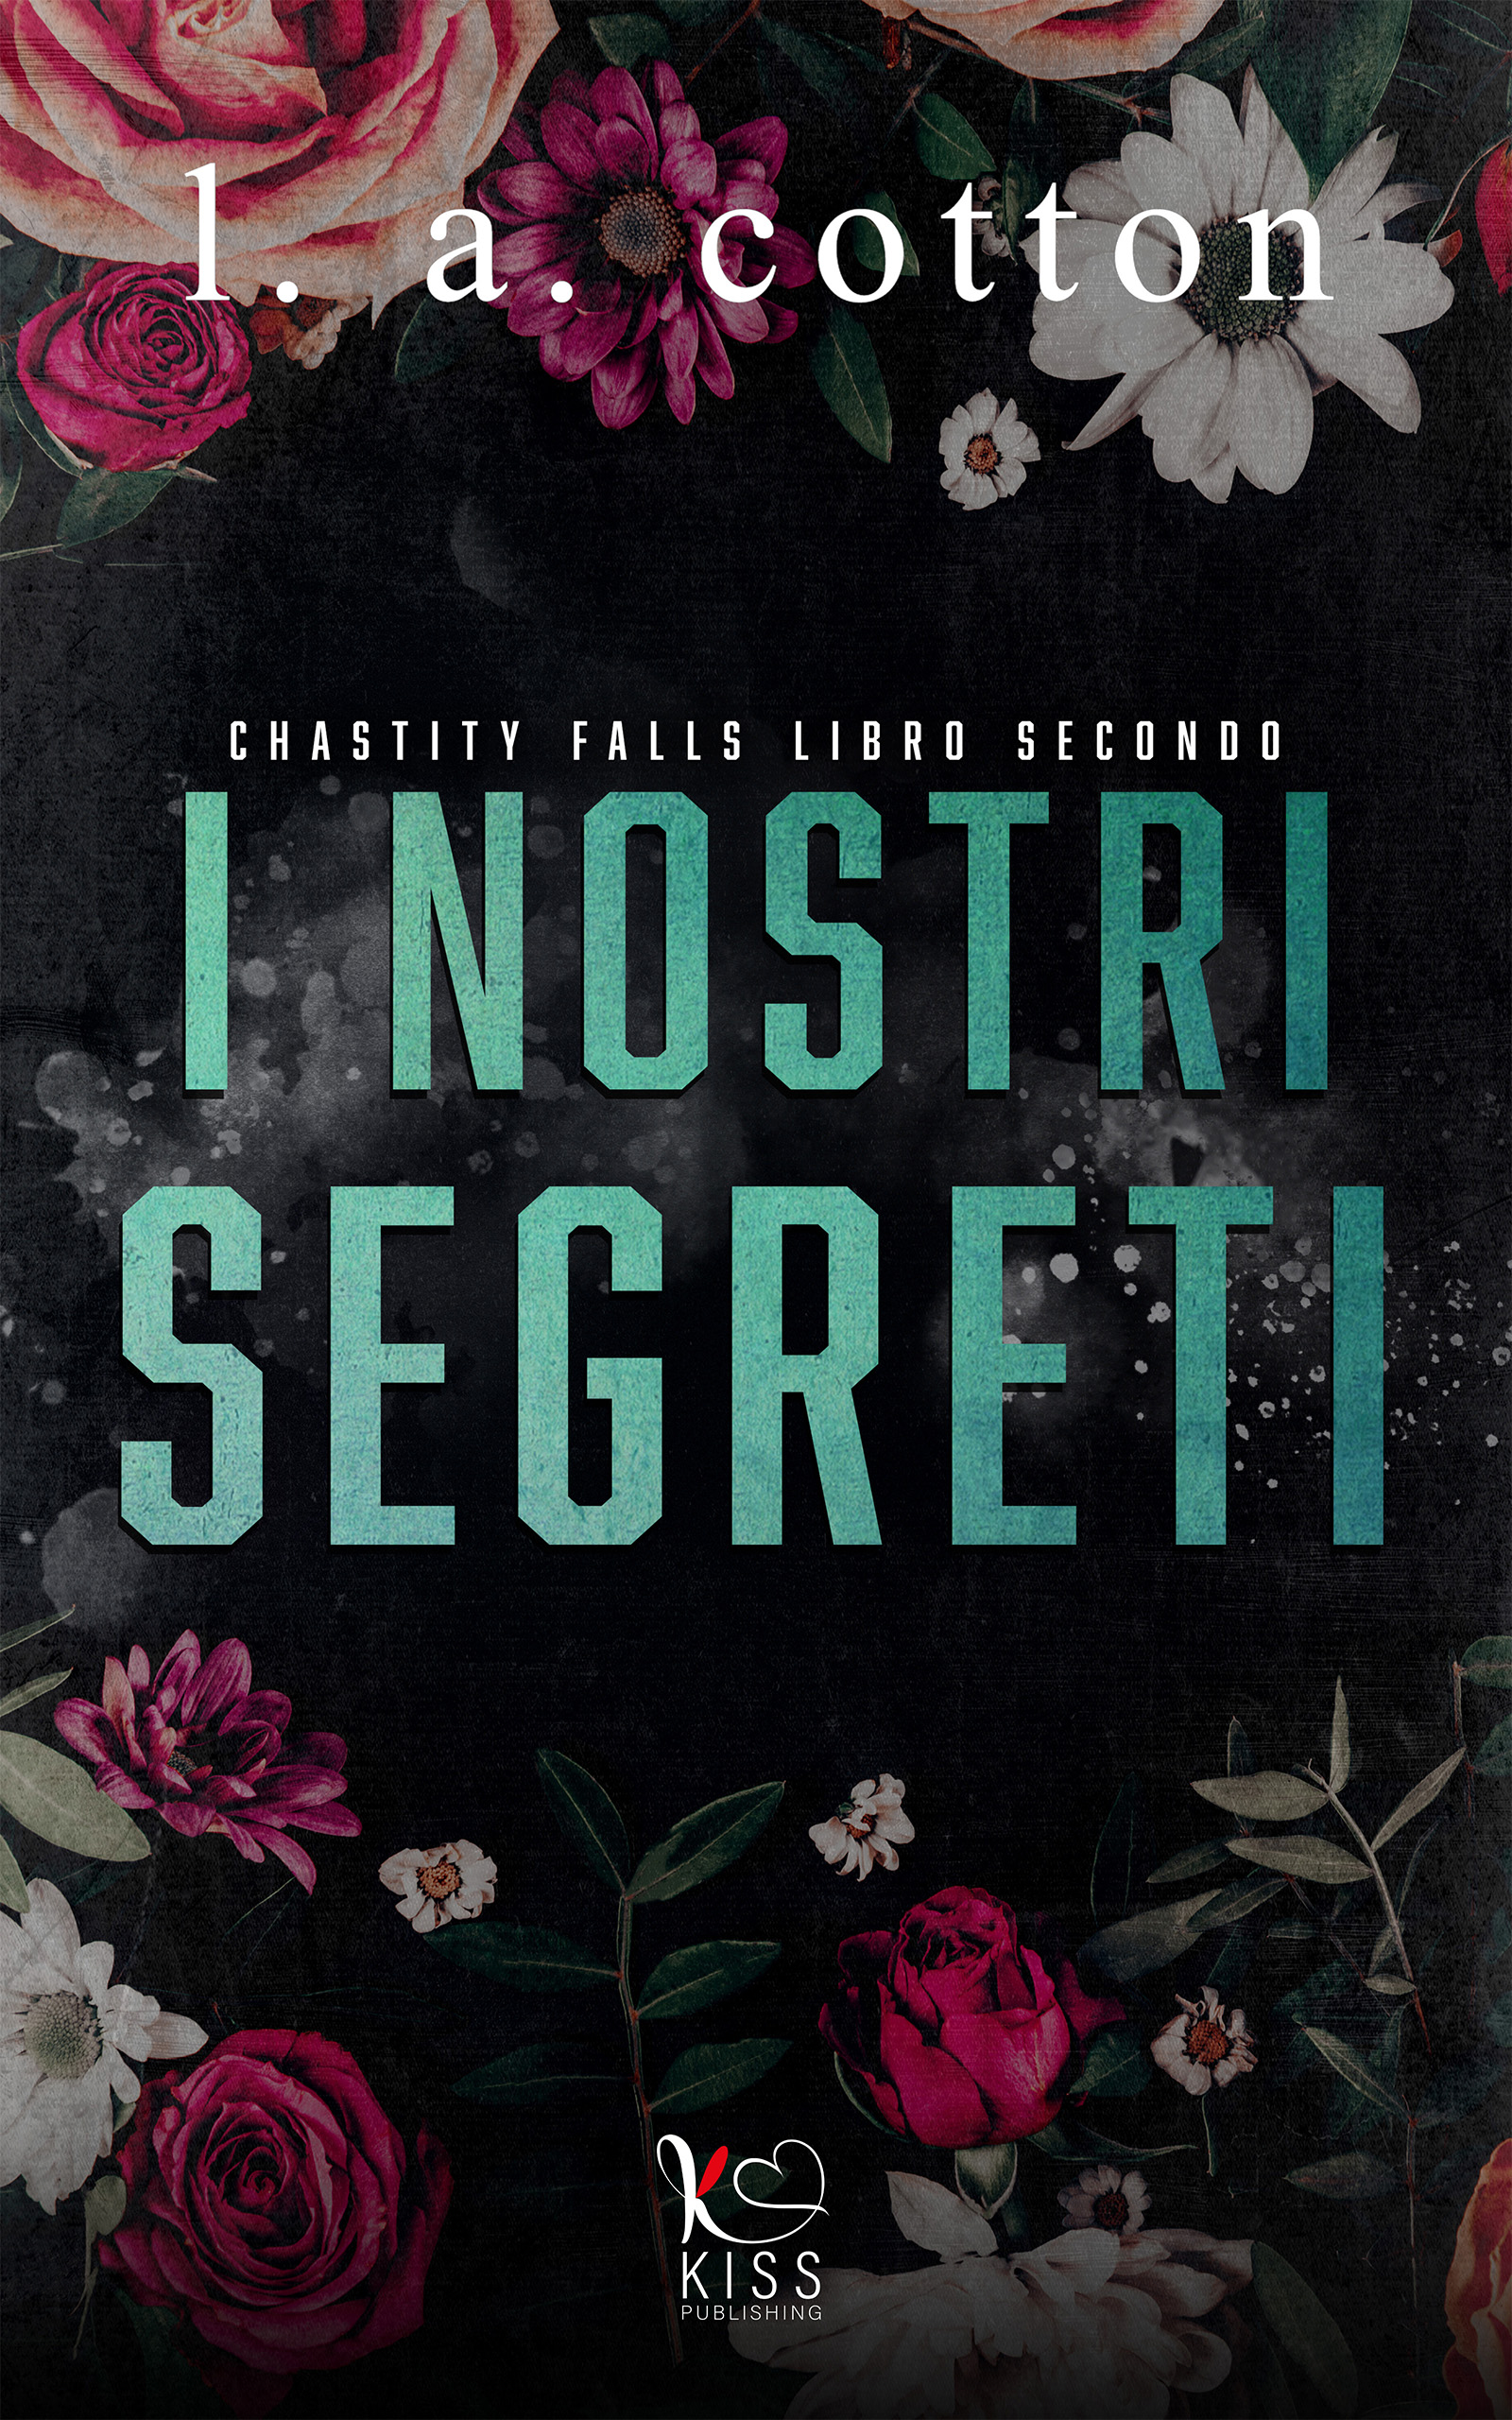 I Nostri Segreti new